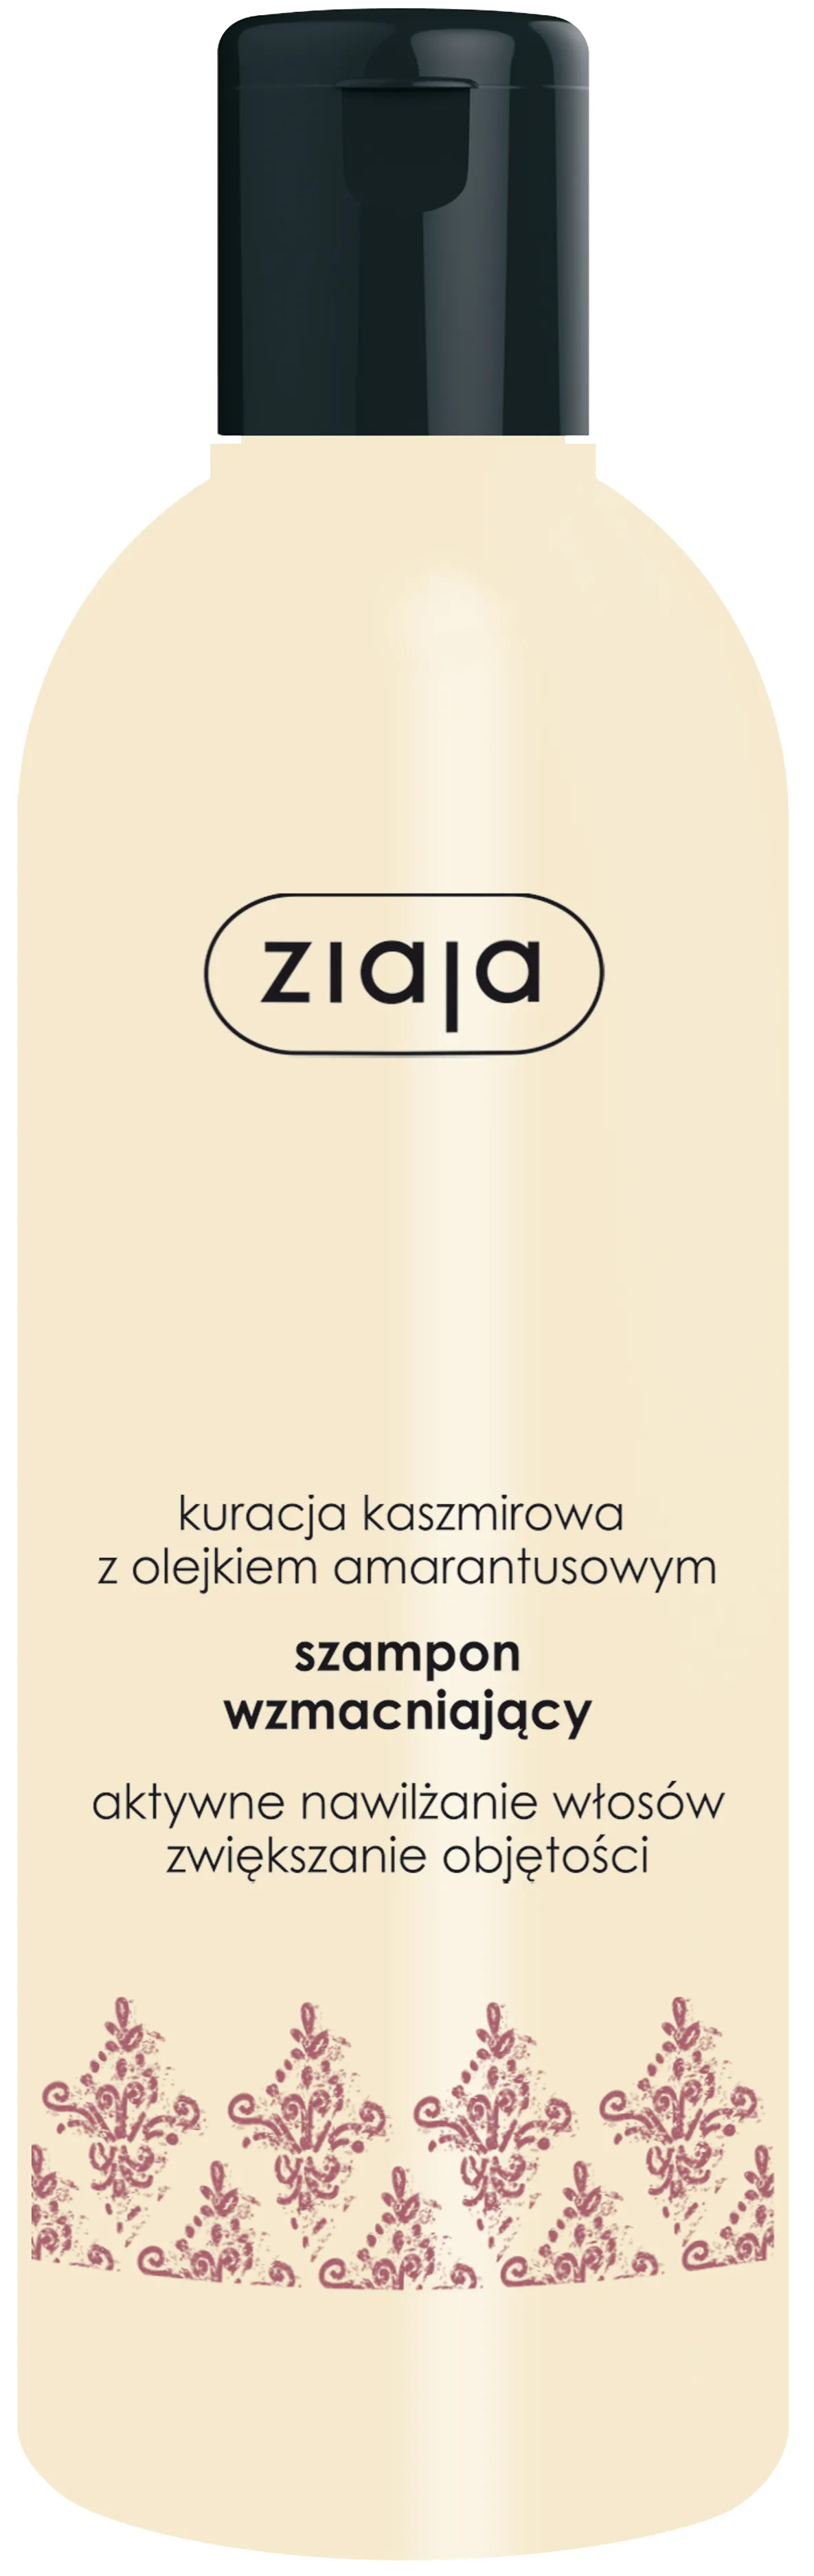 Ziaja Kaszmirowa, szampon wzmacniający, 300 ml